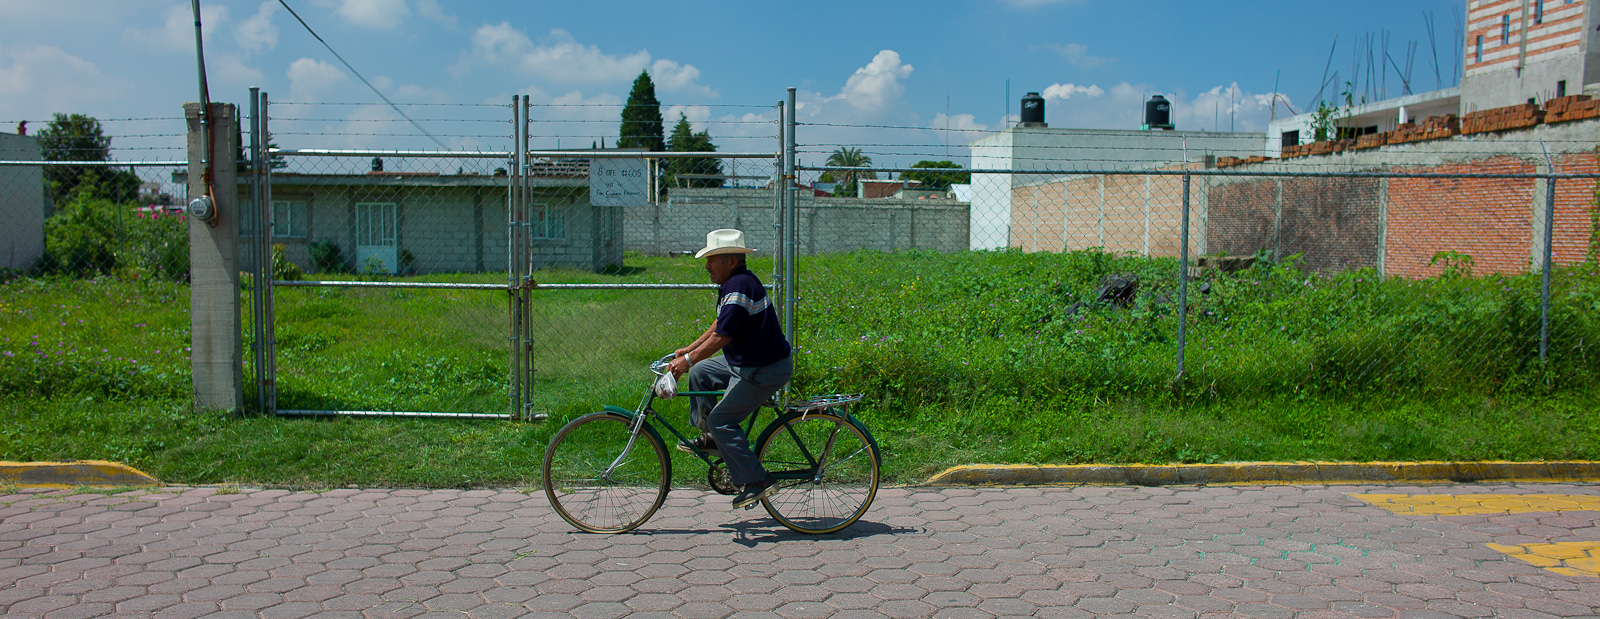 Man on Bike, Empty Lot